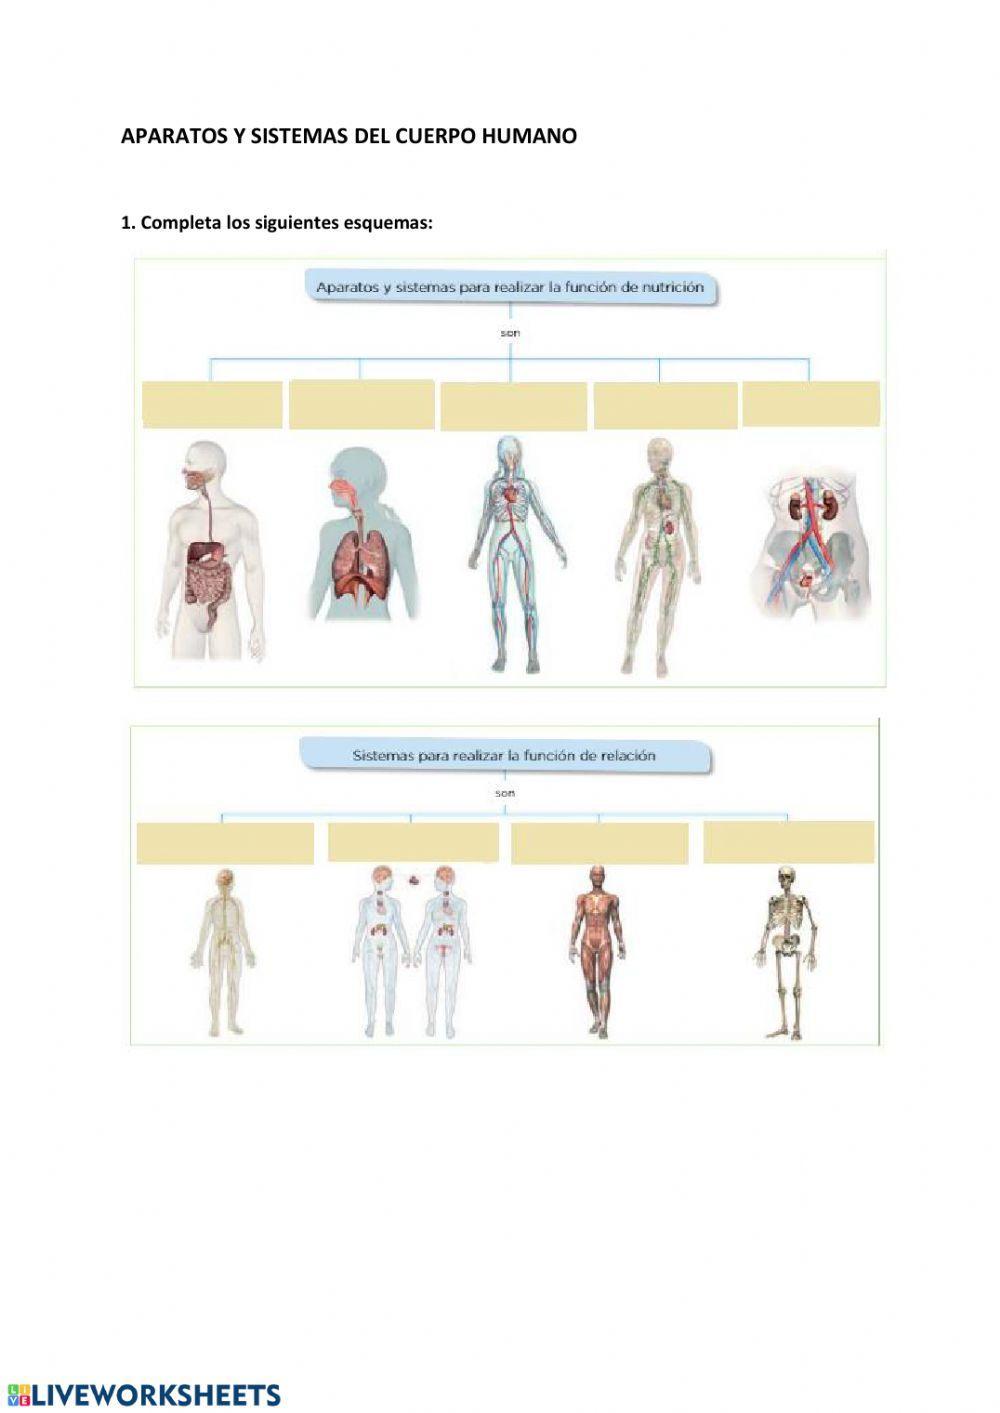 Aparatos y sistemas del cuerpo humano